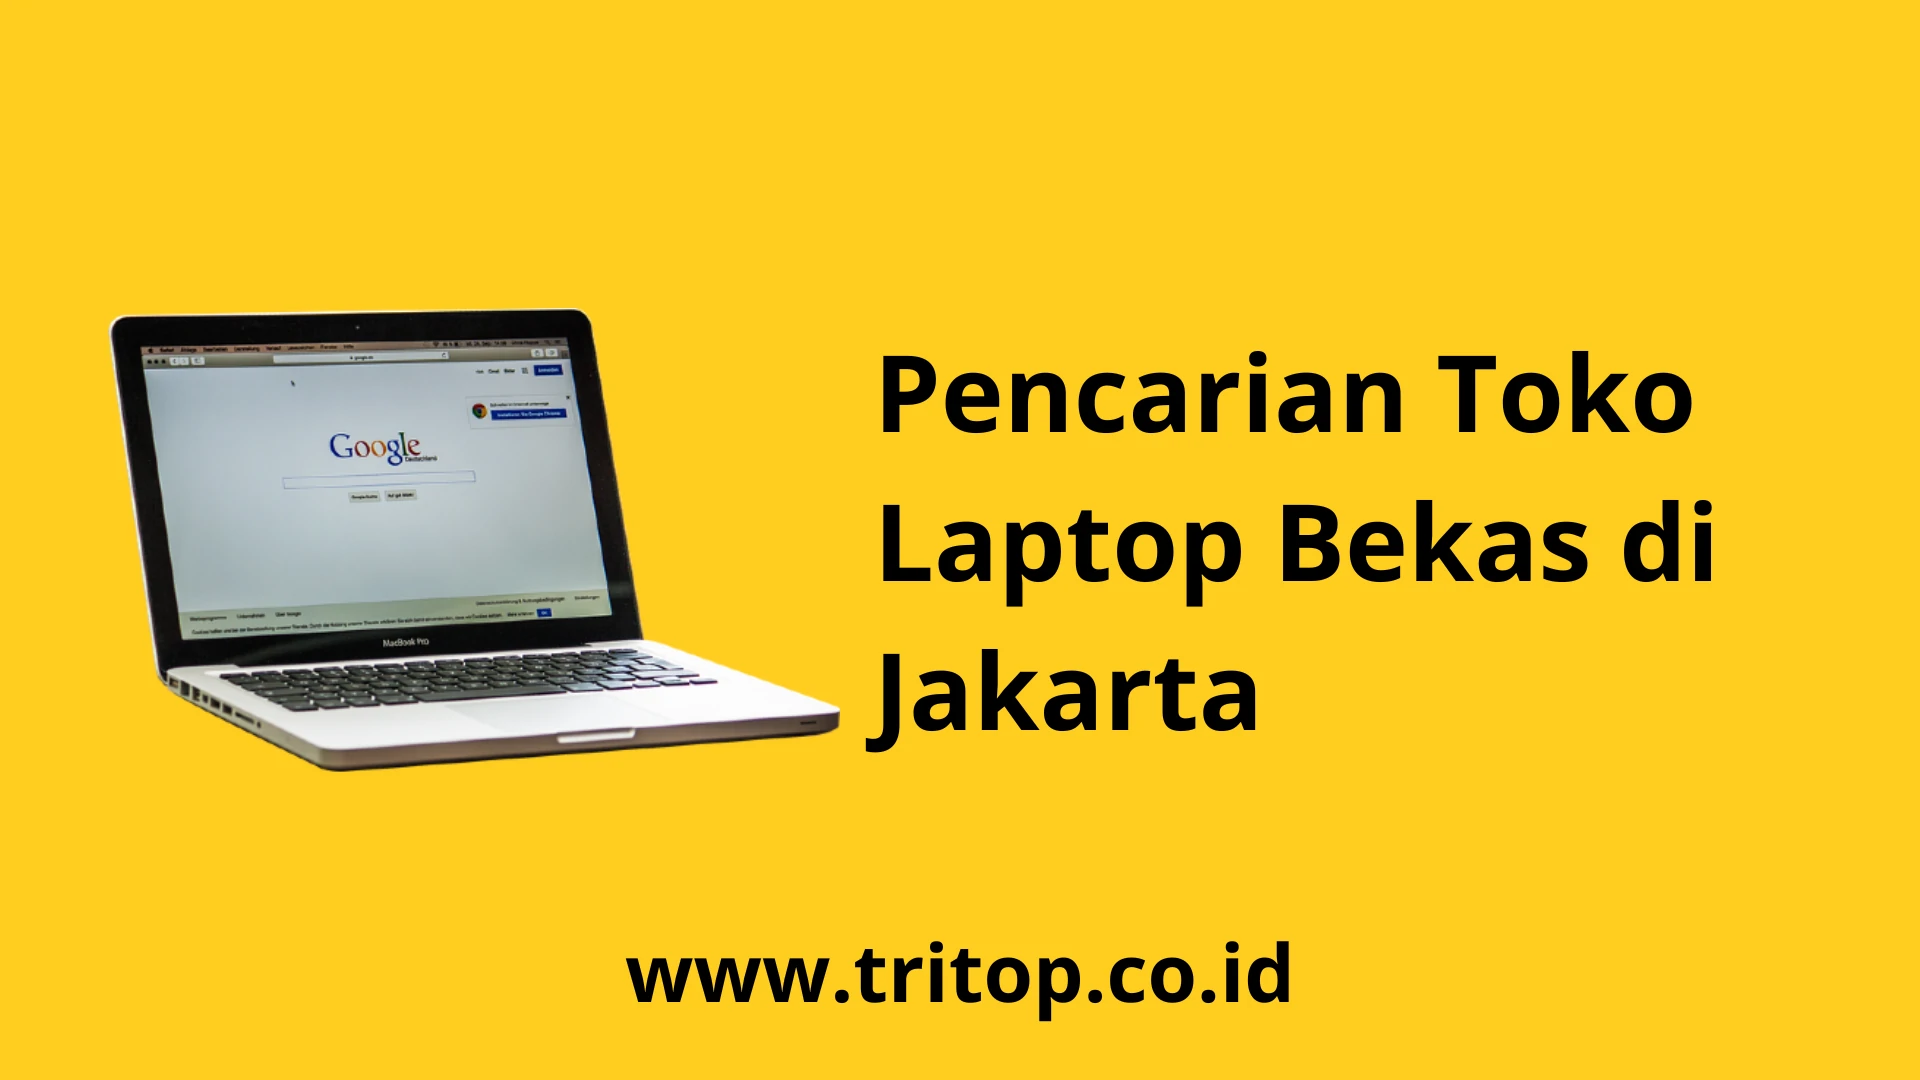 Toko Laptop Bekas Jakarta Tritop.co.id